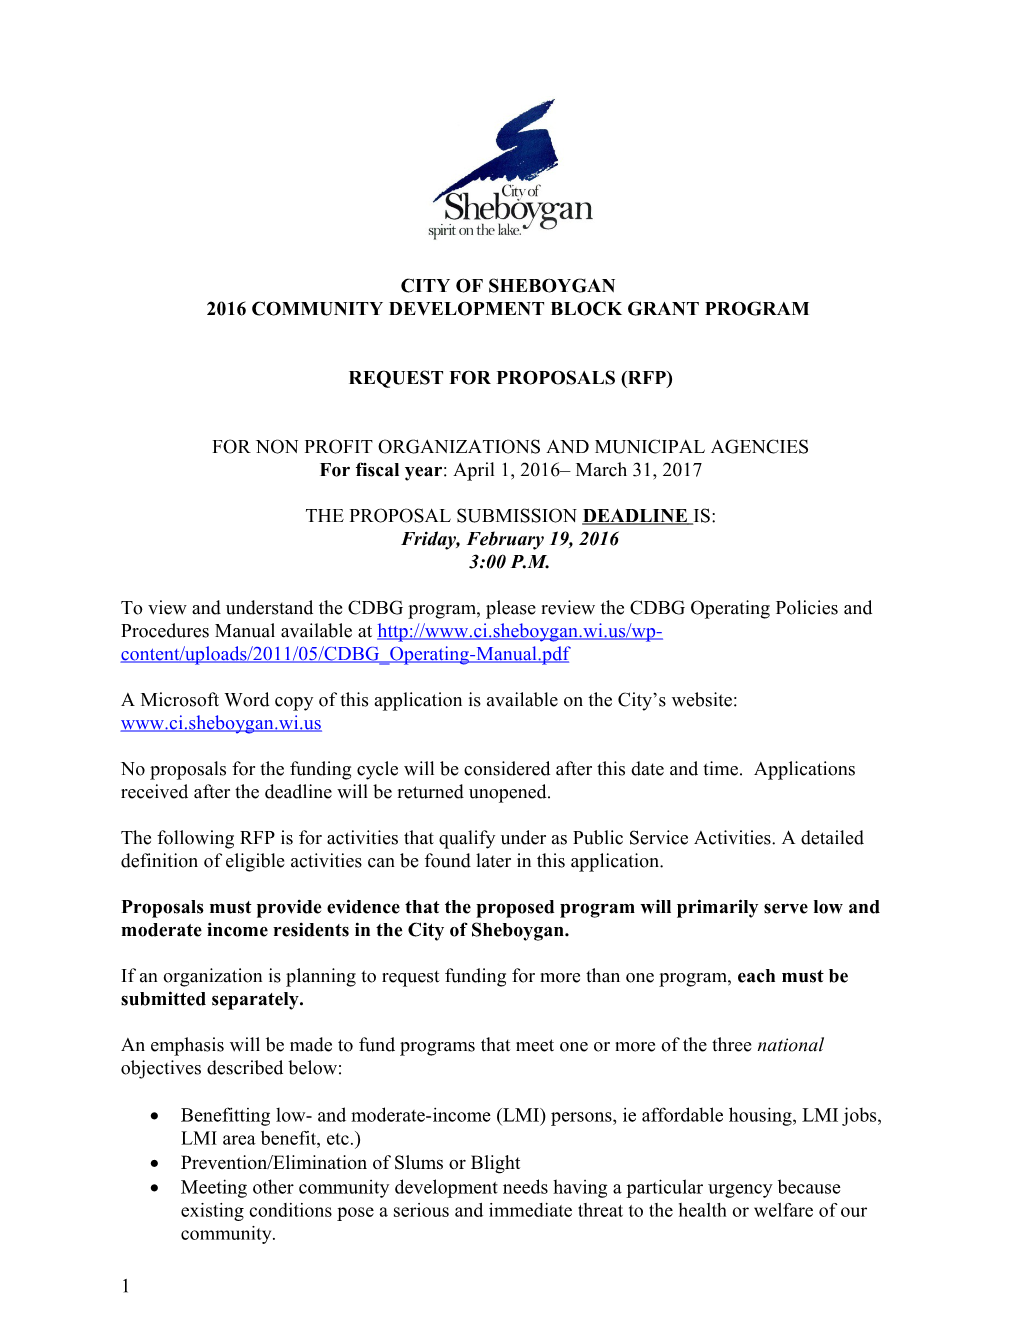 City of Sheboygan 2003 Cdbg Program Application Form